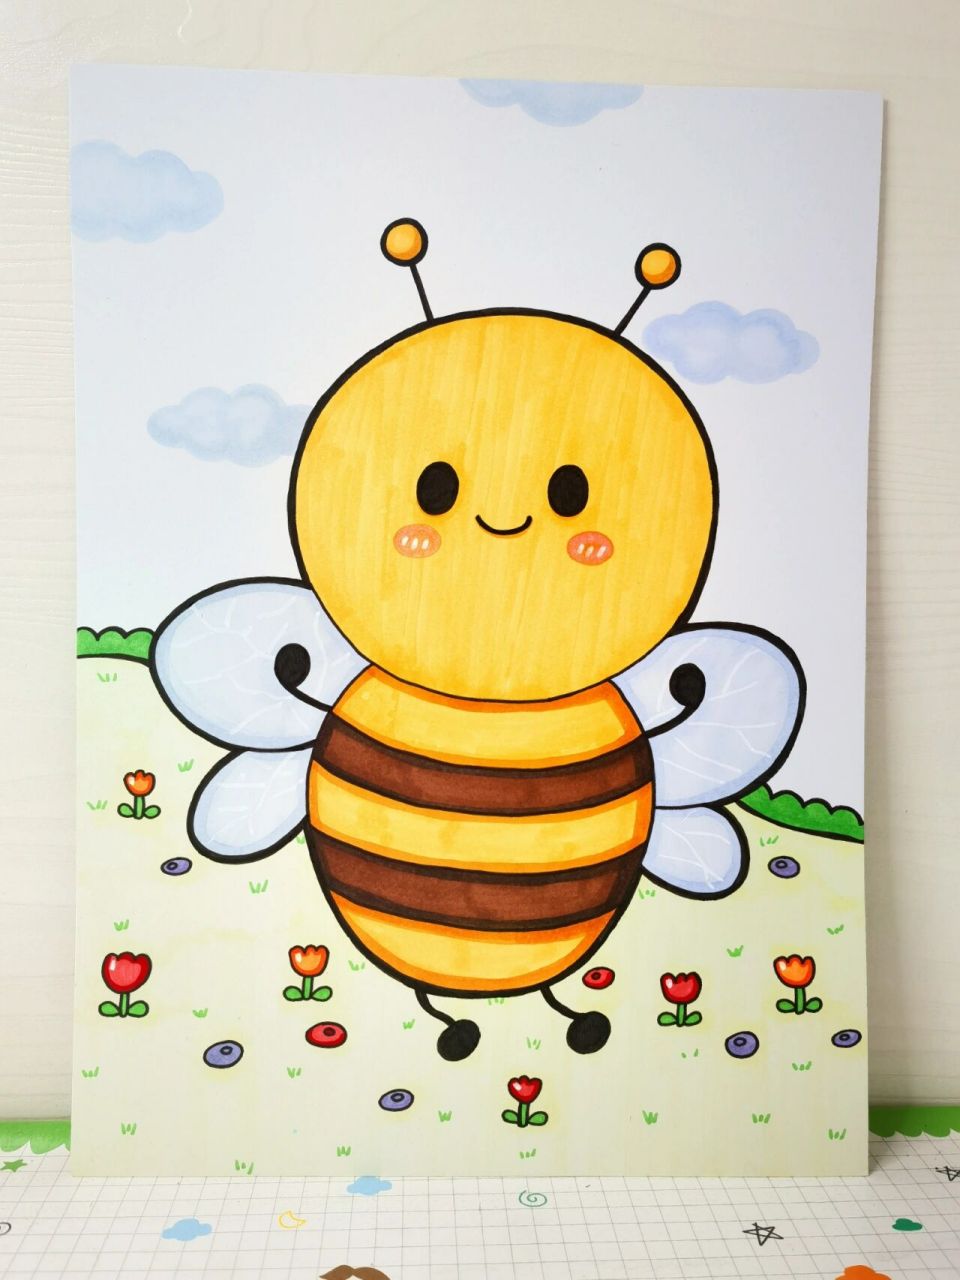 蜜蜂简笔画 简单彩色图片